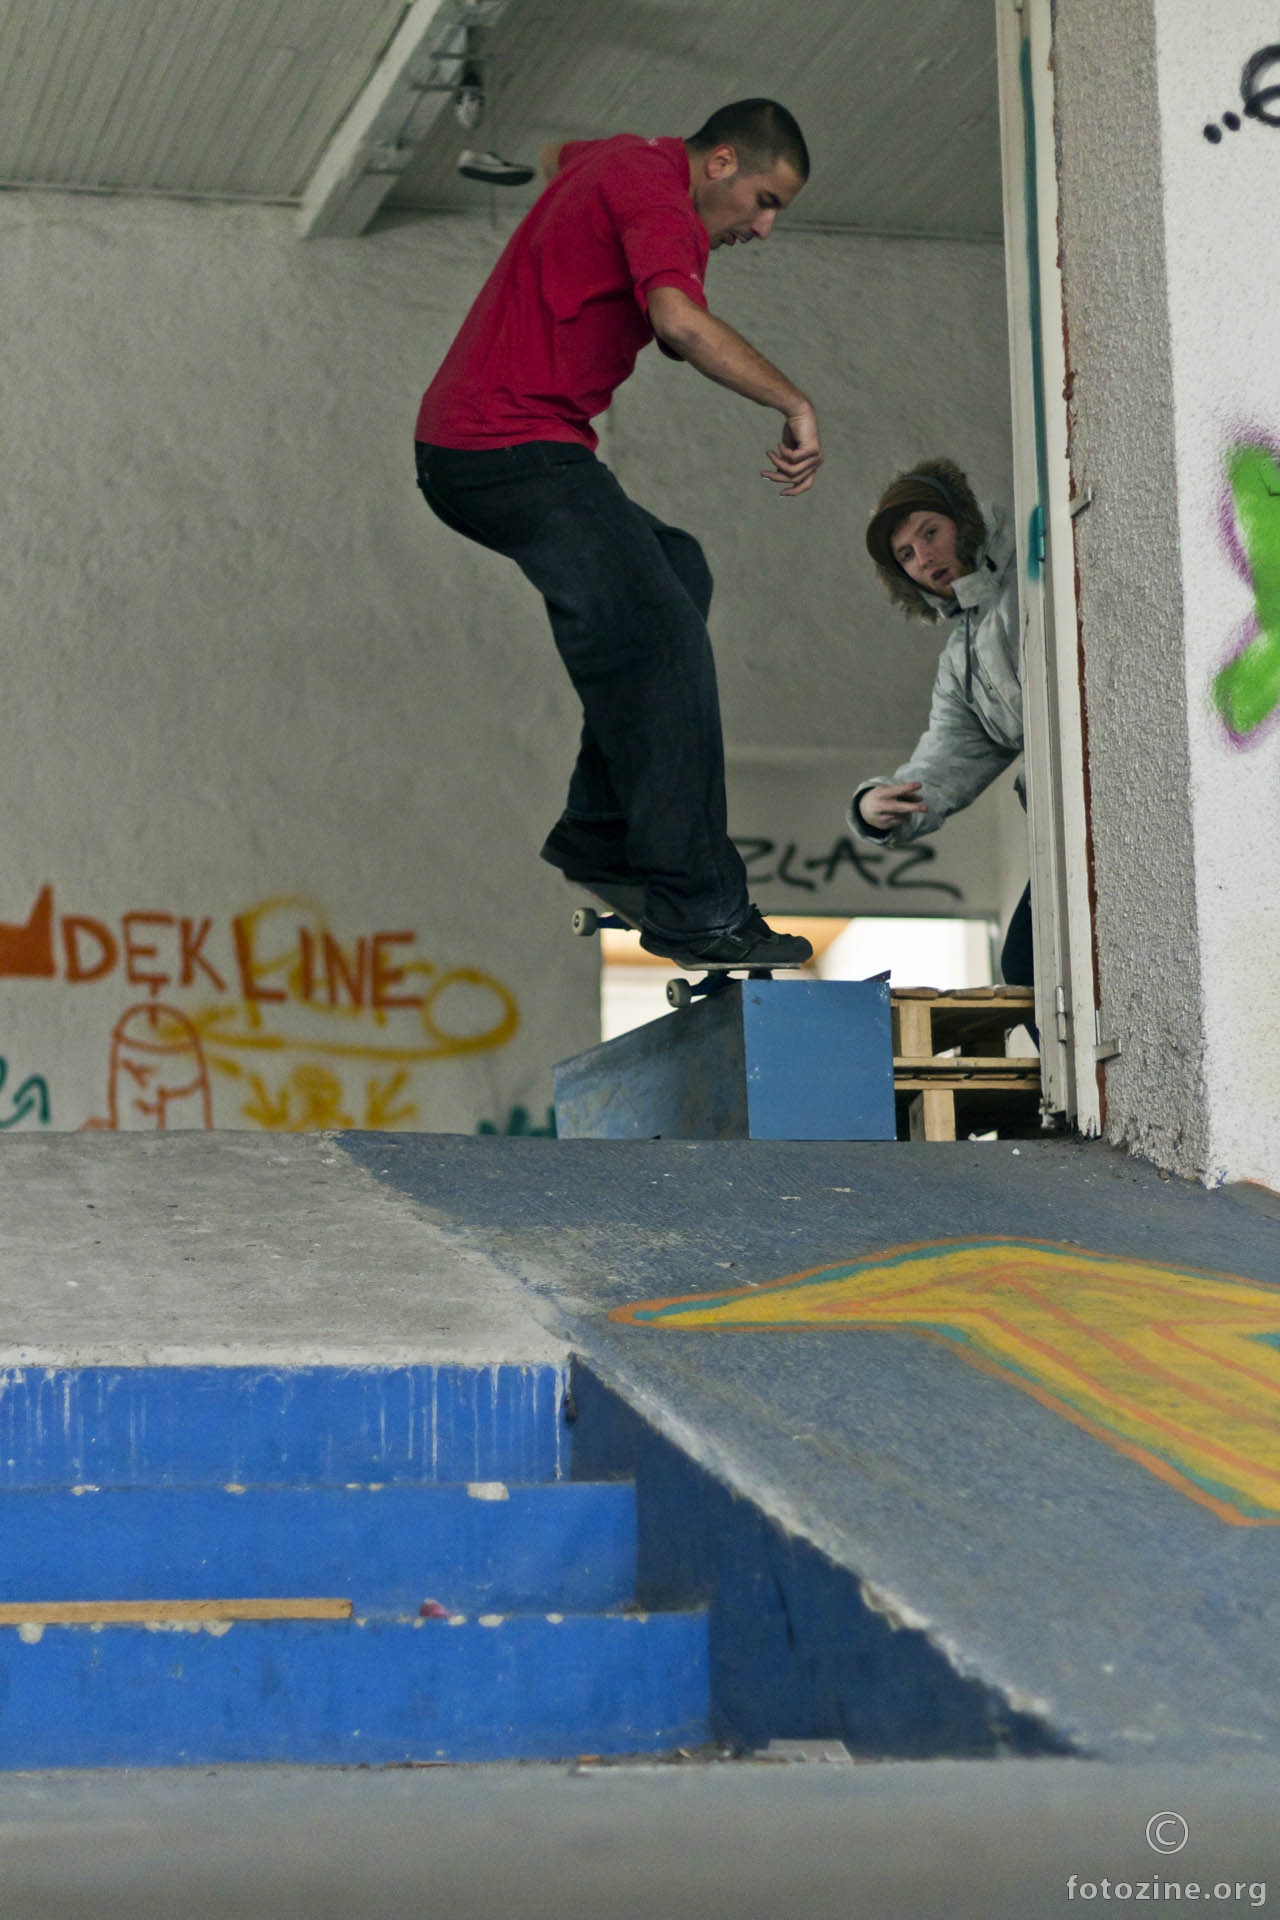 Skvot skateboarding